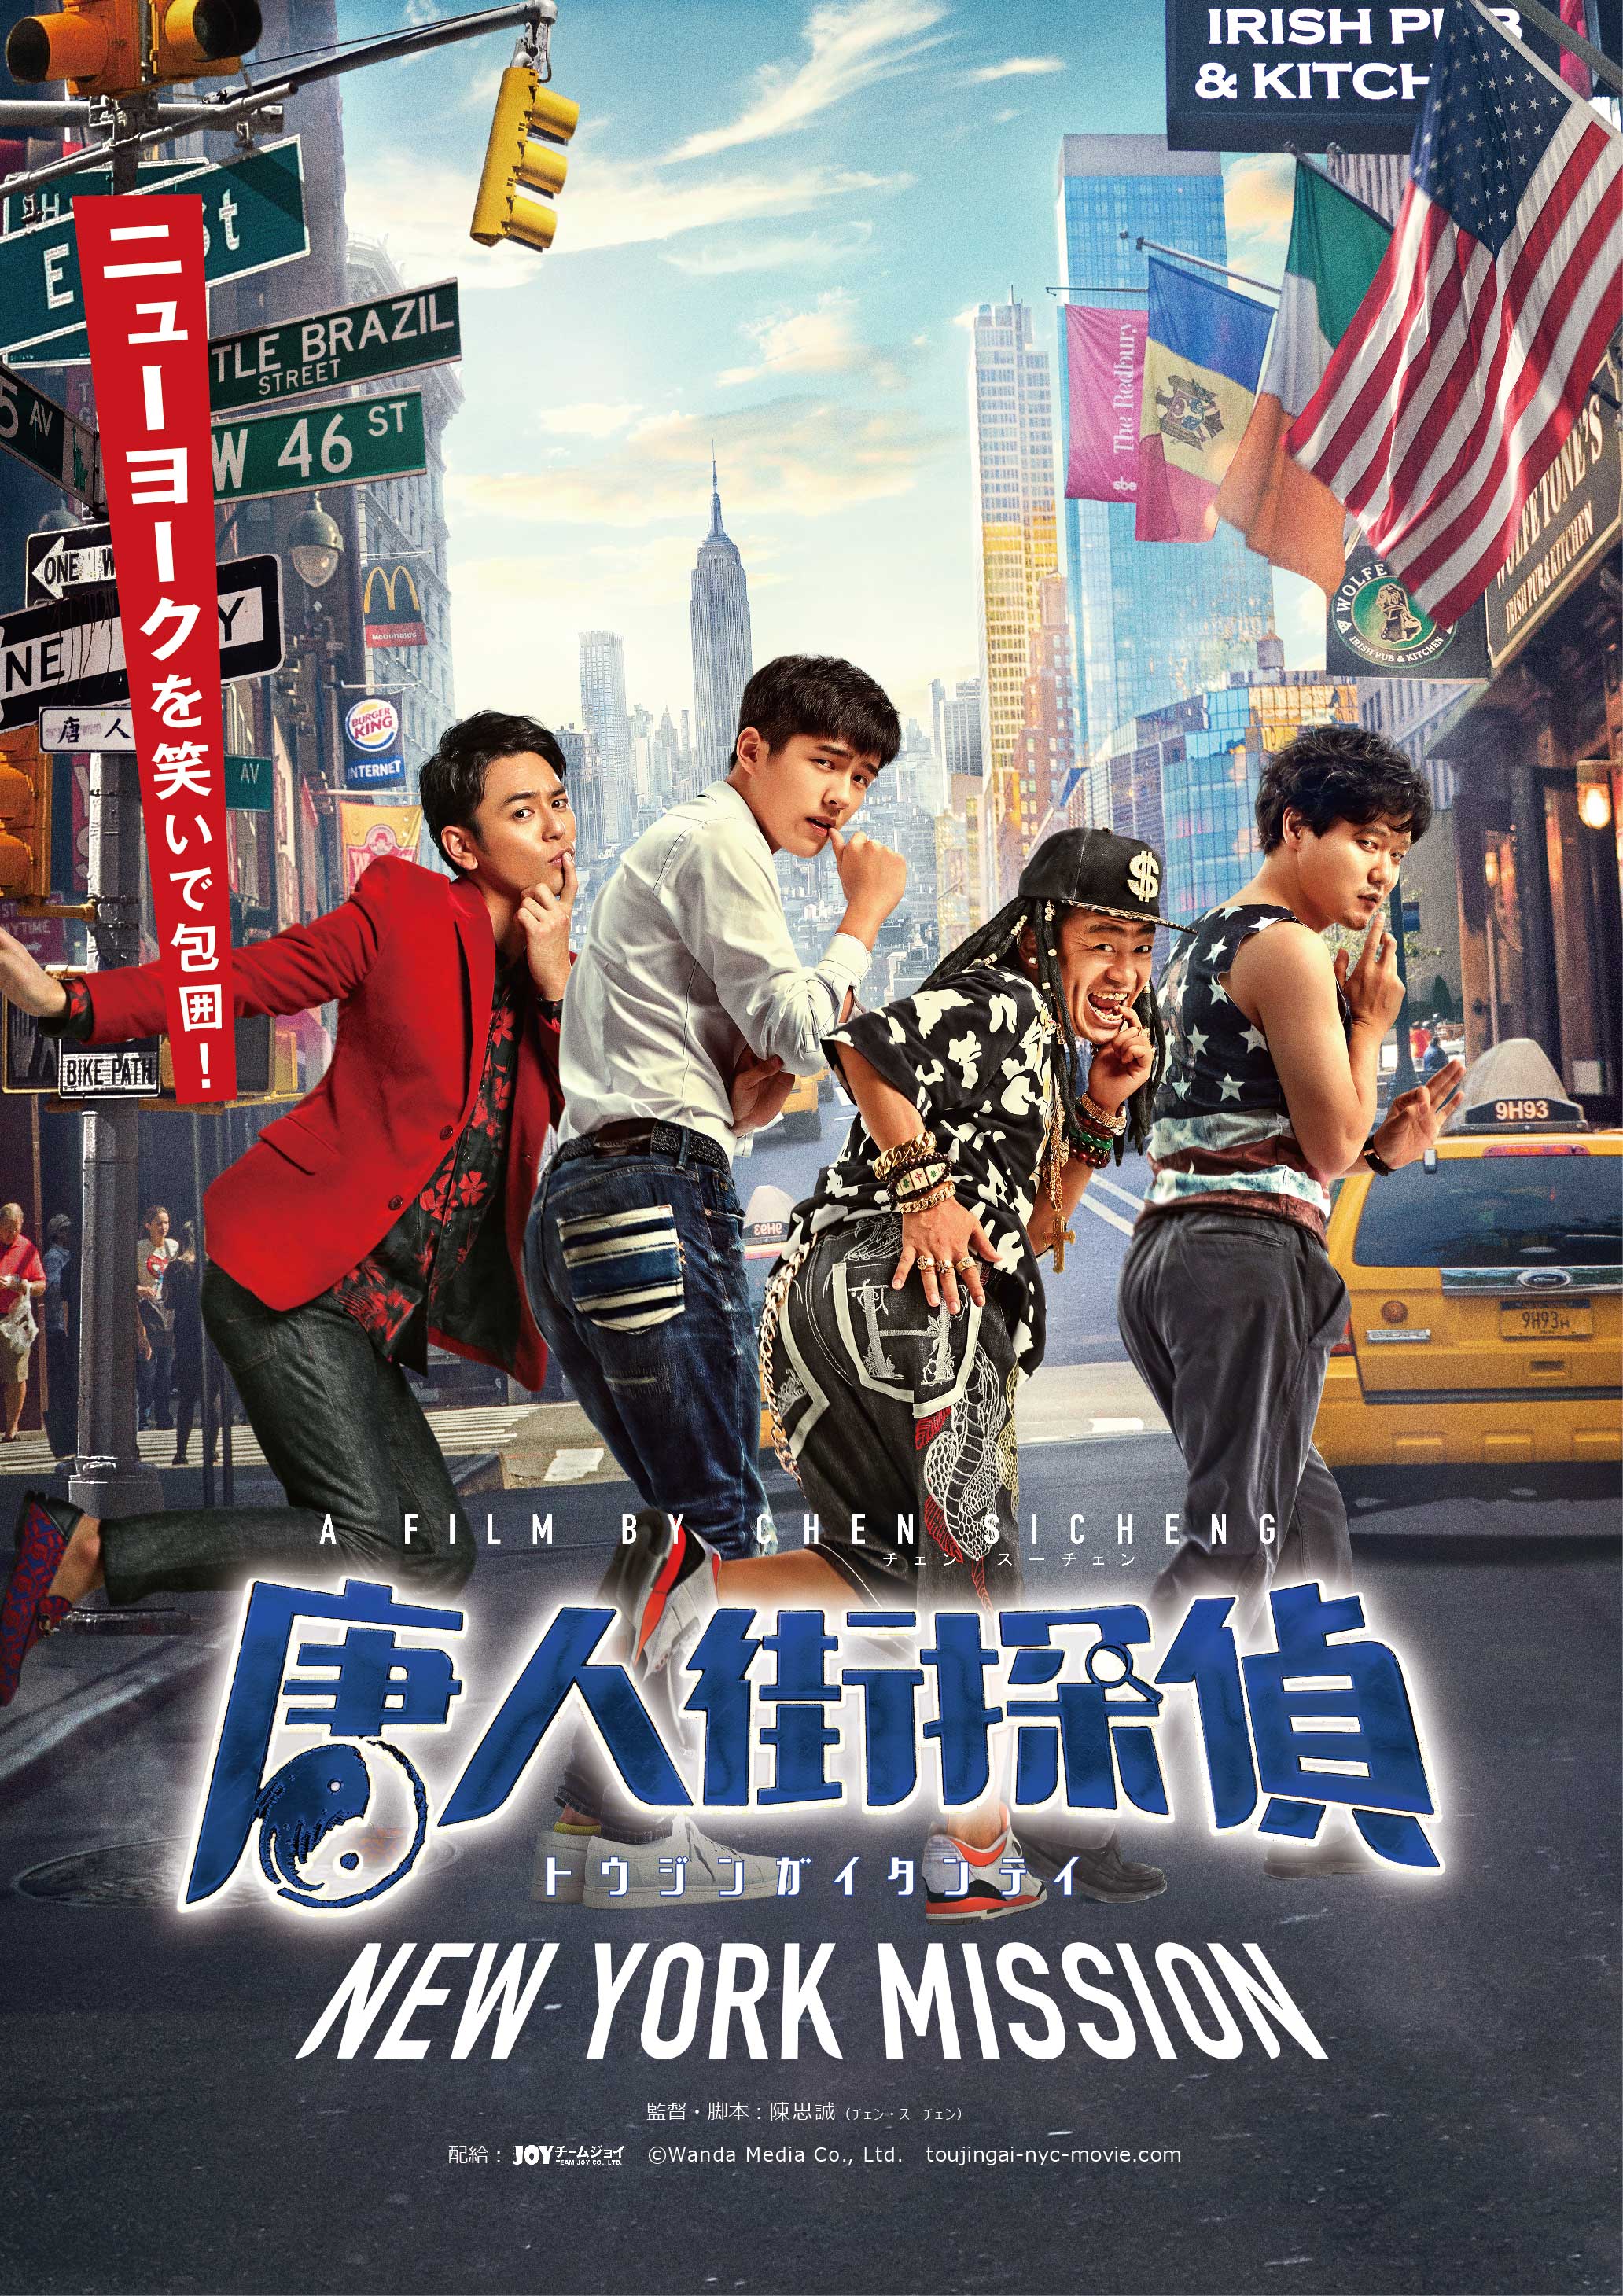 喜剧片《唐人街探案2》将于11月12日在日本上映